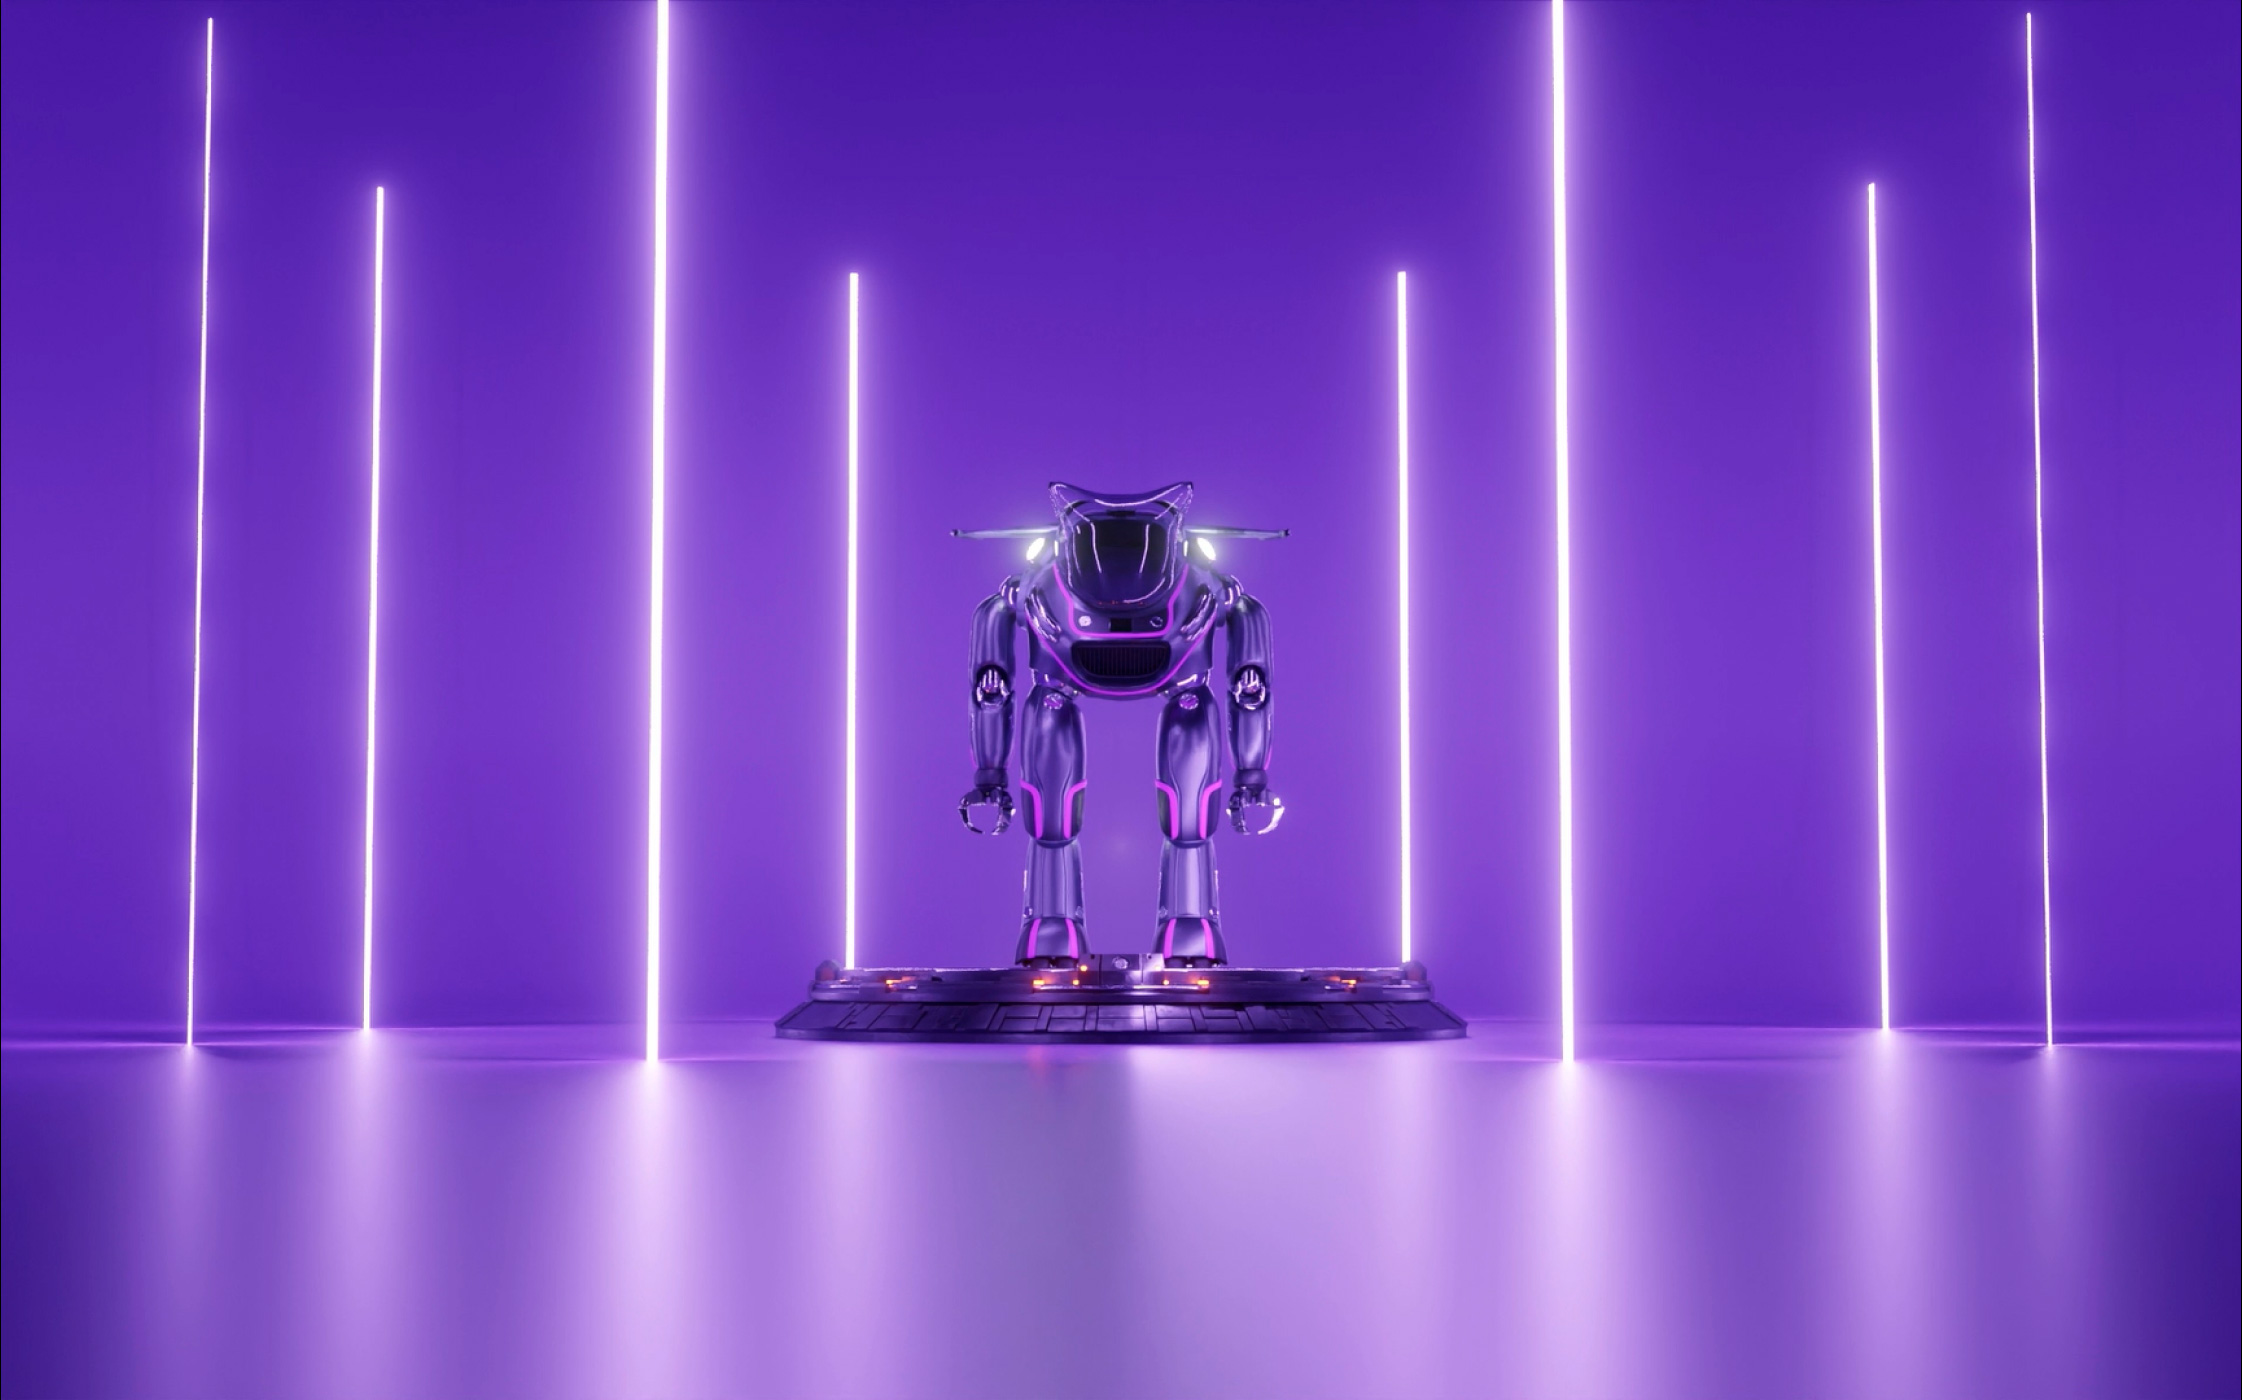 Робот посреди фиолетового помещения, фиолетовые цвета. Айдентика NFT проекта